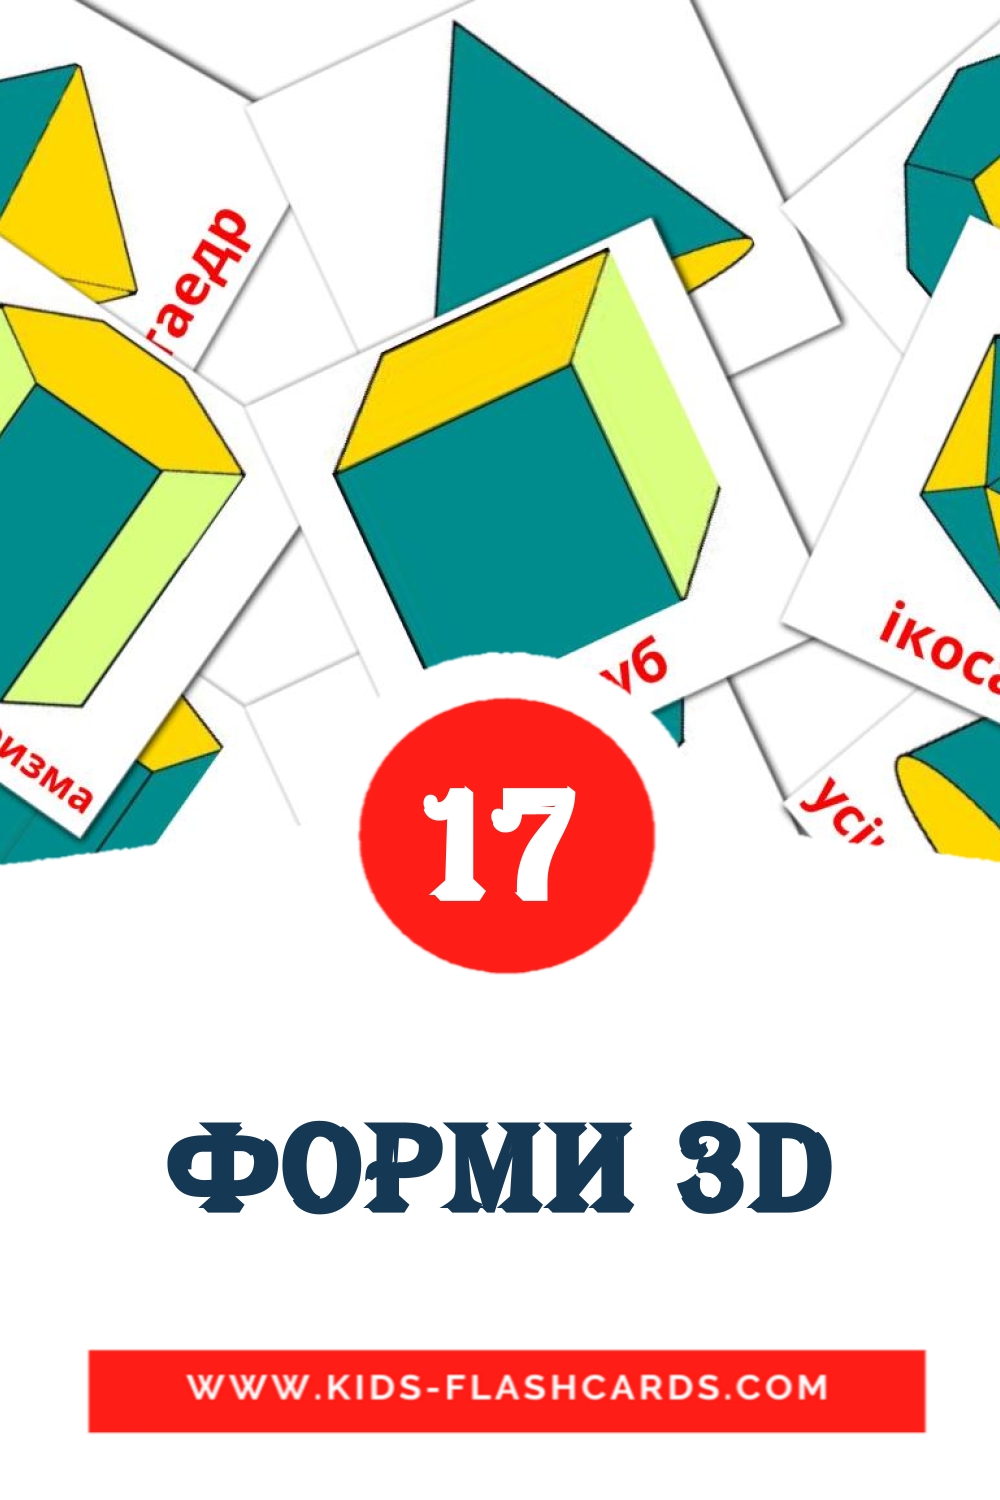 Форми 3D на украинском для Детского Сада (17 карточек)